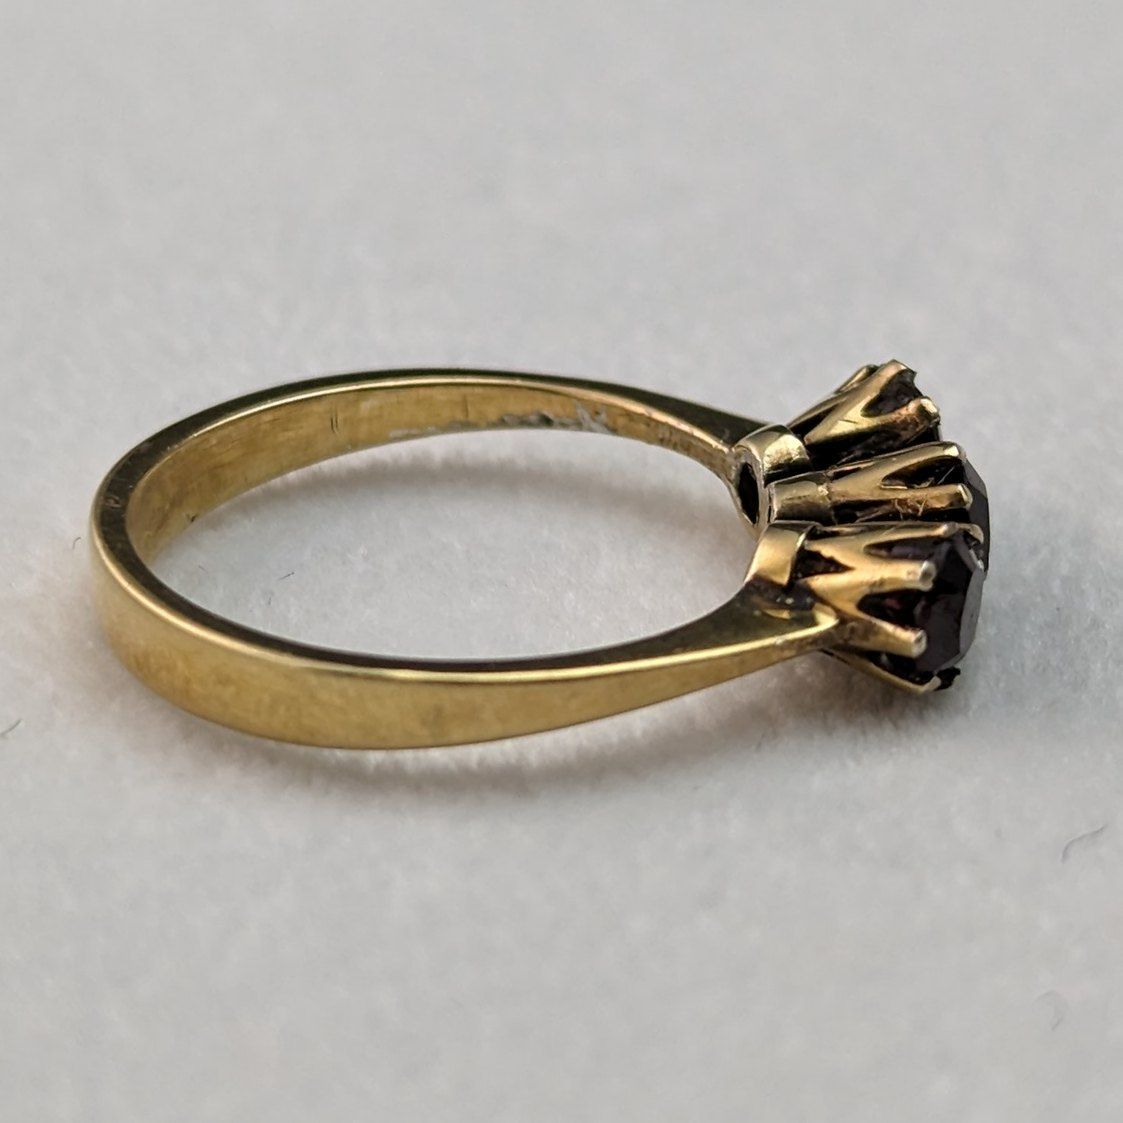 1997年 英国ヴィンテージジュエリー ガーネット 純銀ギルトリング 指輪